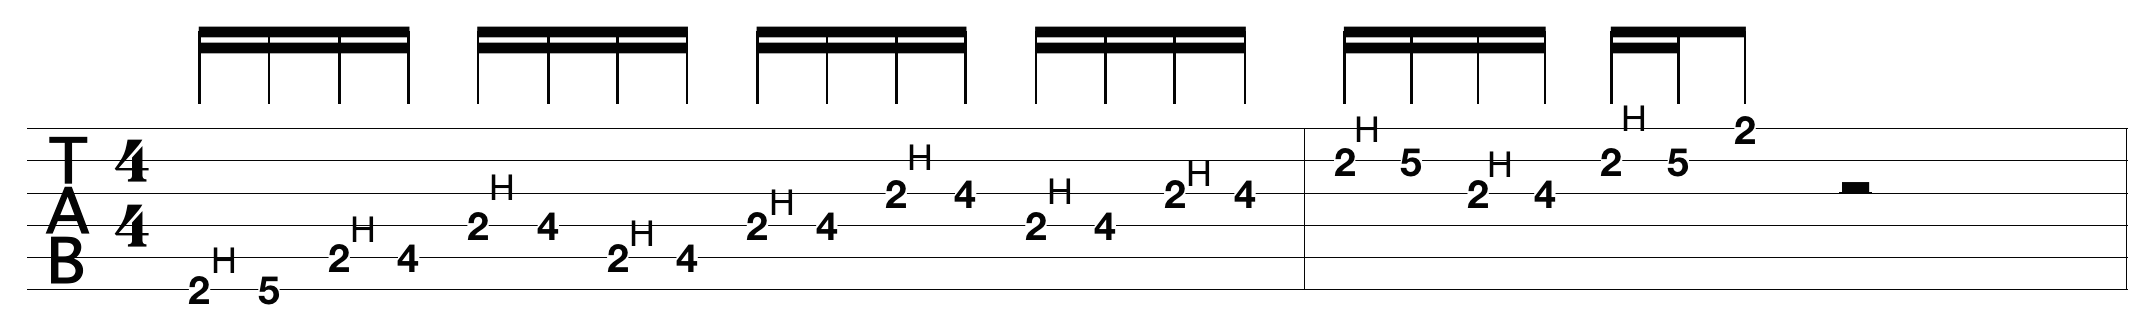 justin-guitar-scales_1.png